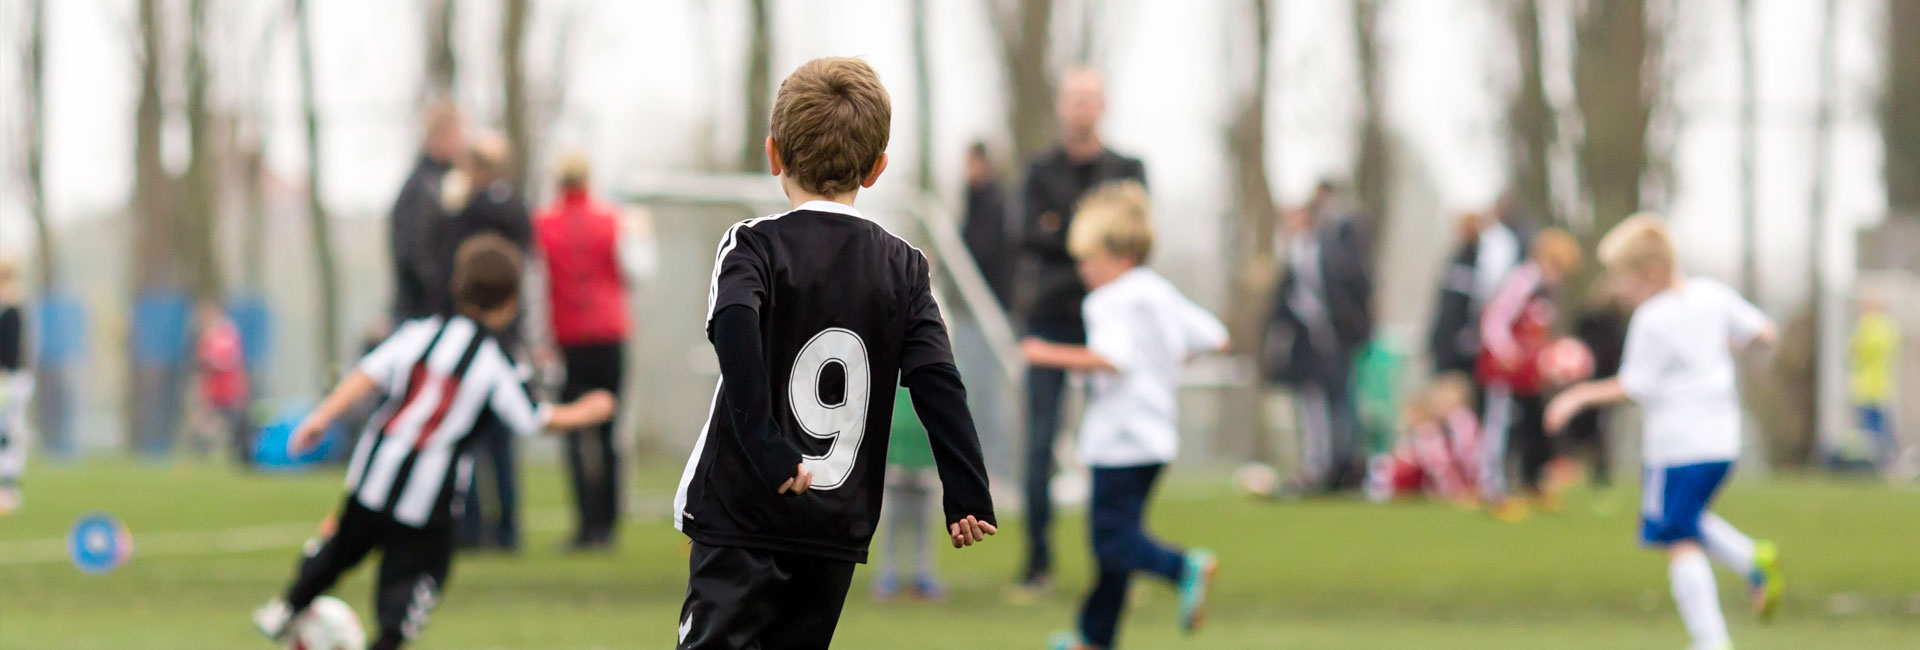 Safeguarding children in sport